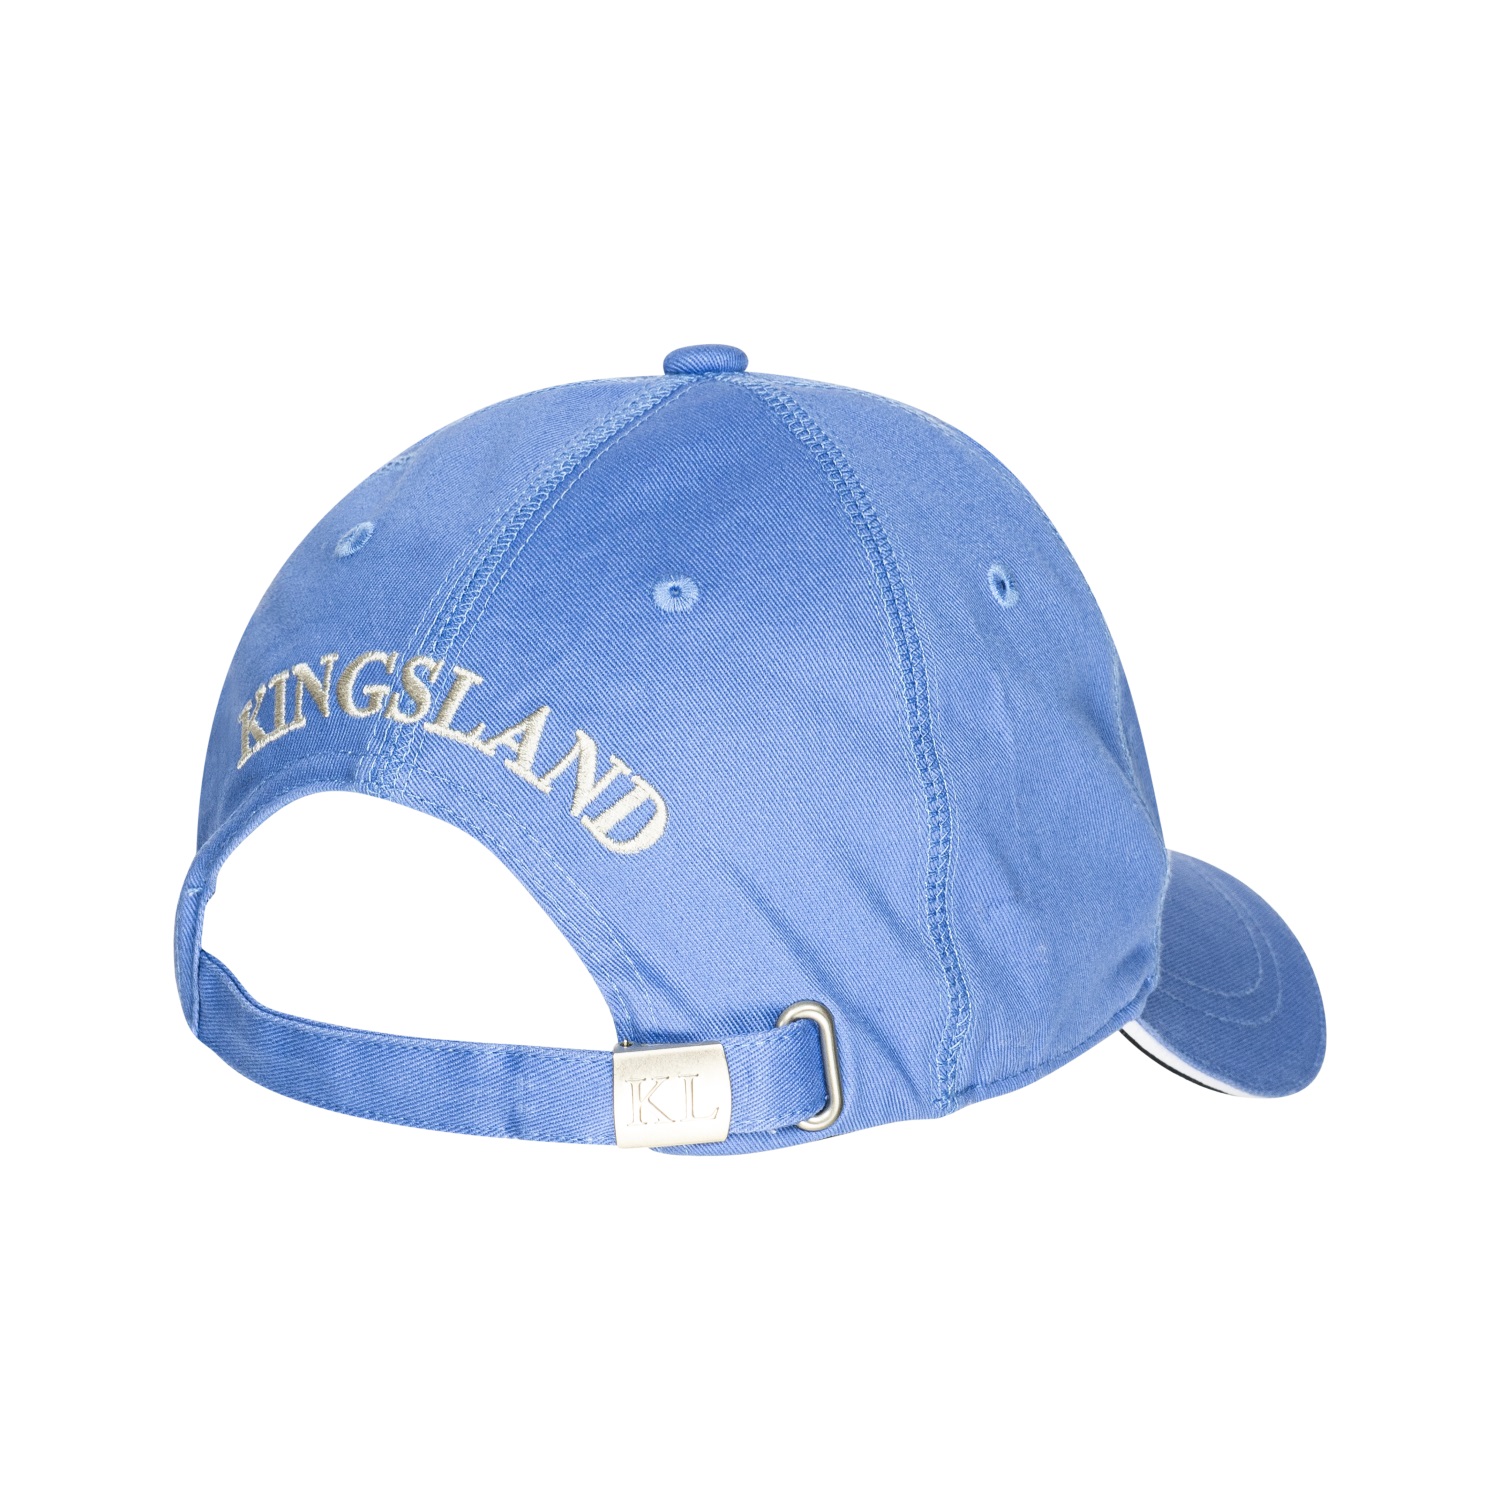 KINGSLAND Unisex Classic Limited Cap, Basecap - blue grap - onesize - 2